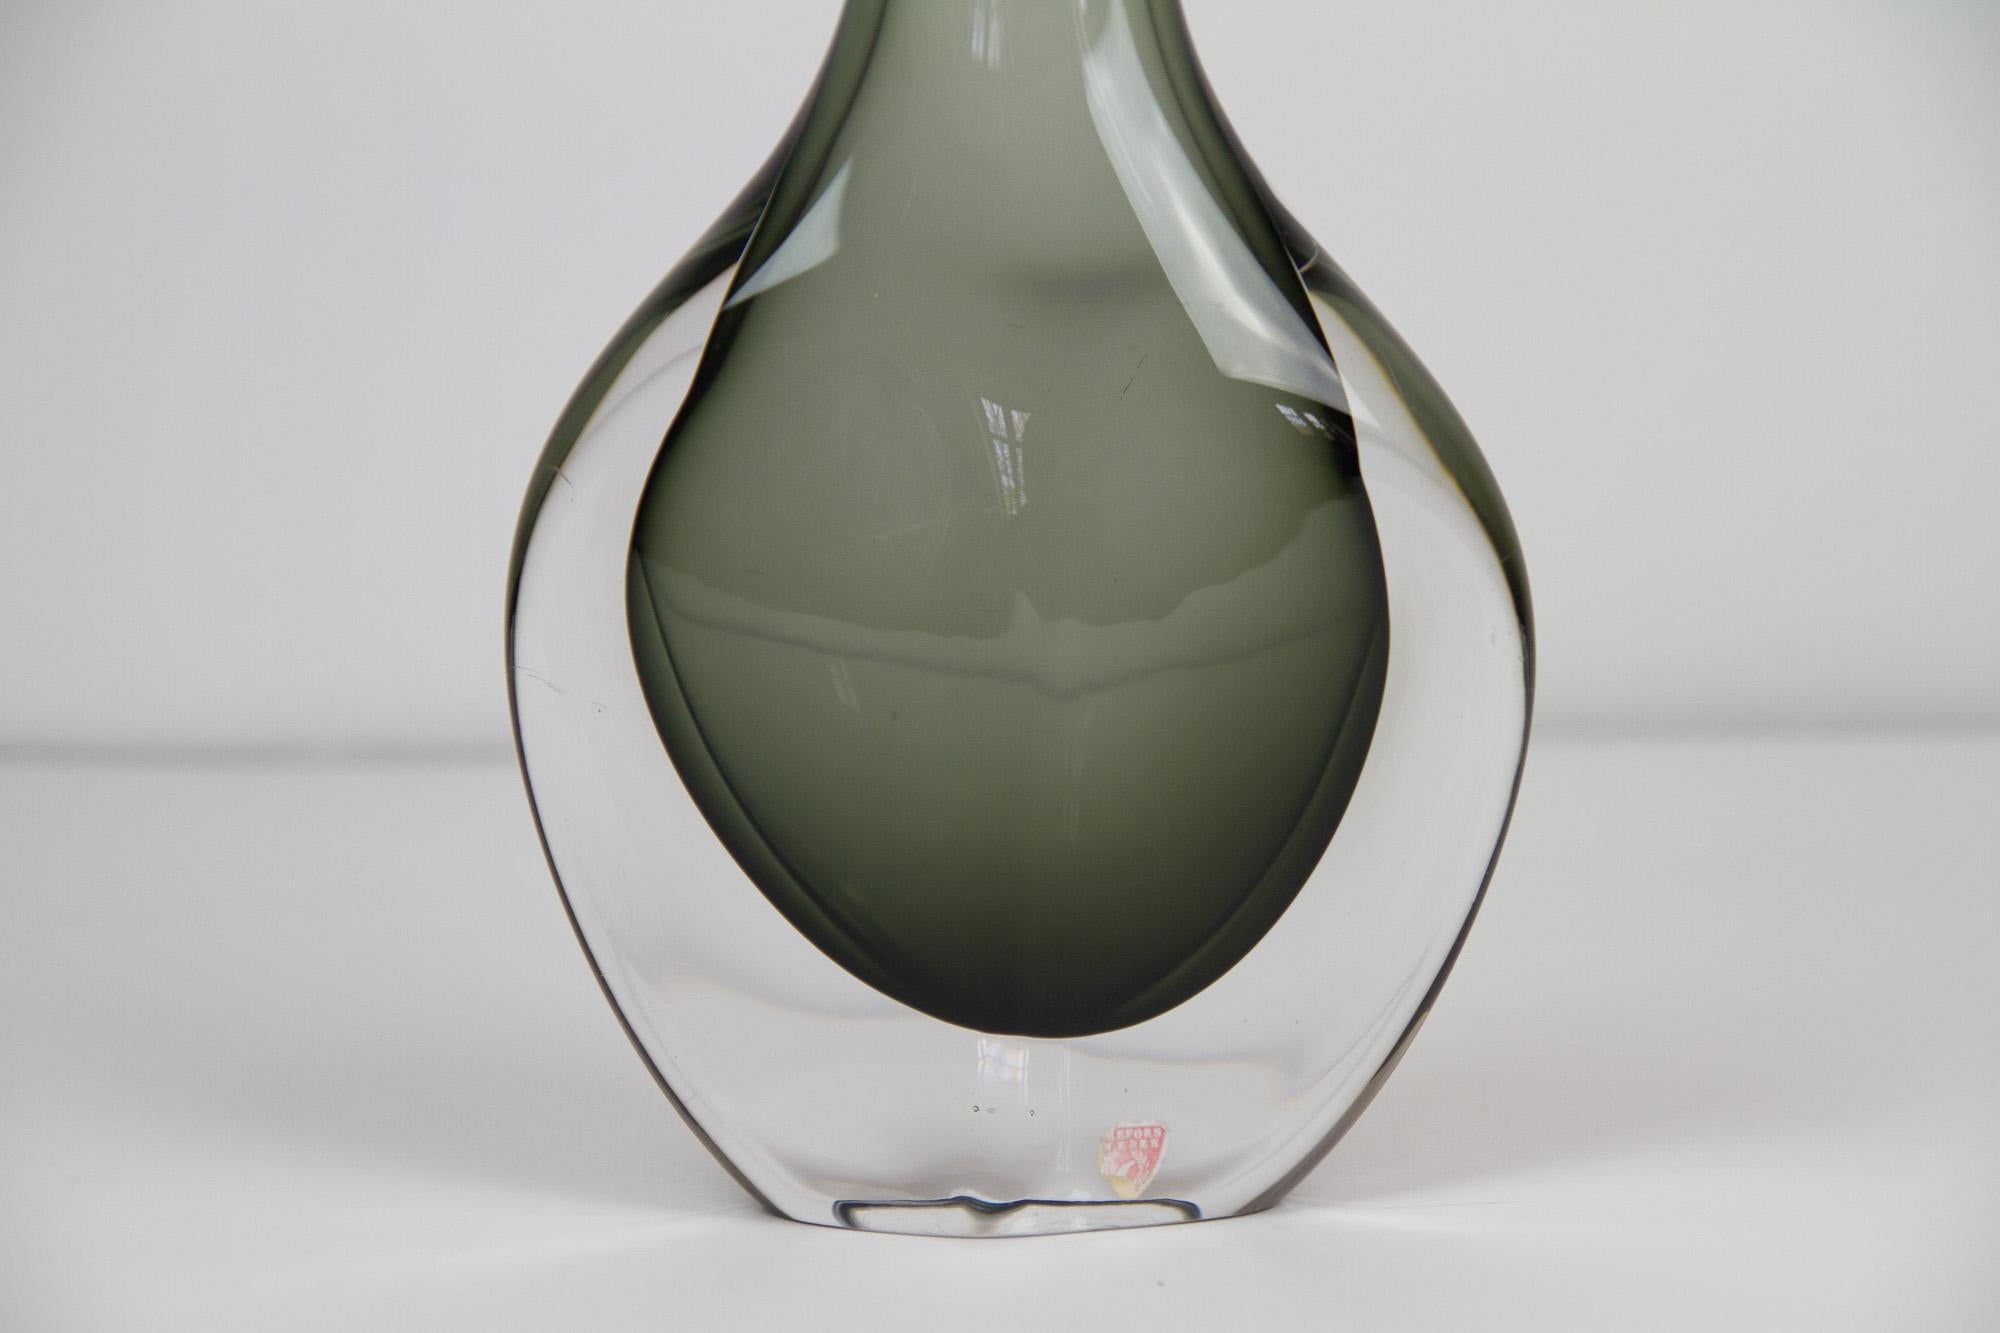 Mid-20th Century Scandinavian Modern Glass Vase by Nils Landberg for Orrefors, 1950s For Sale